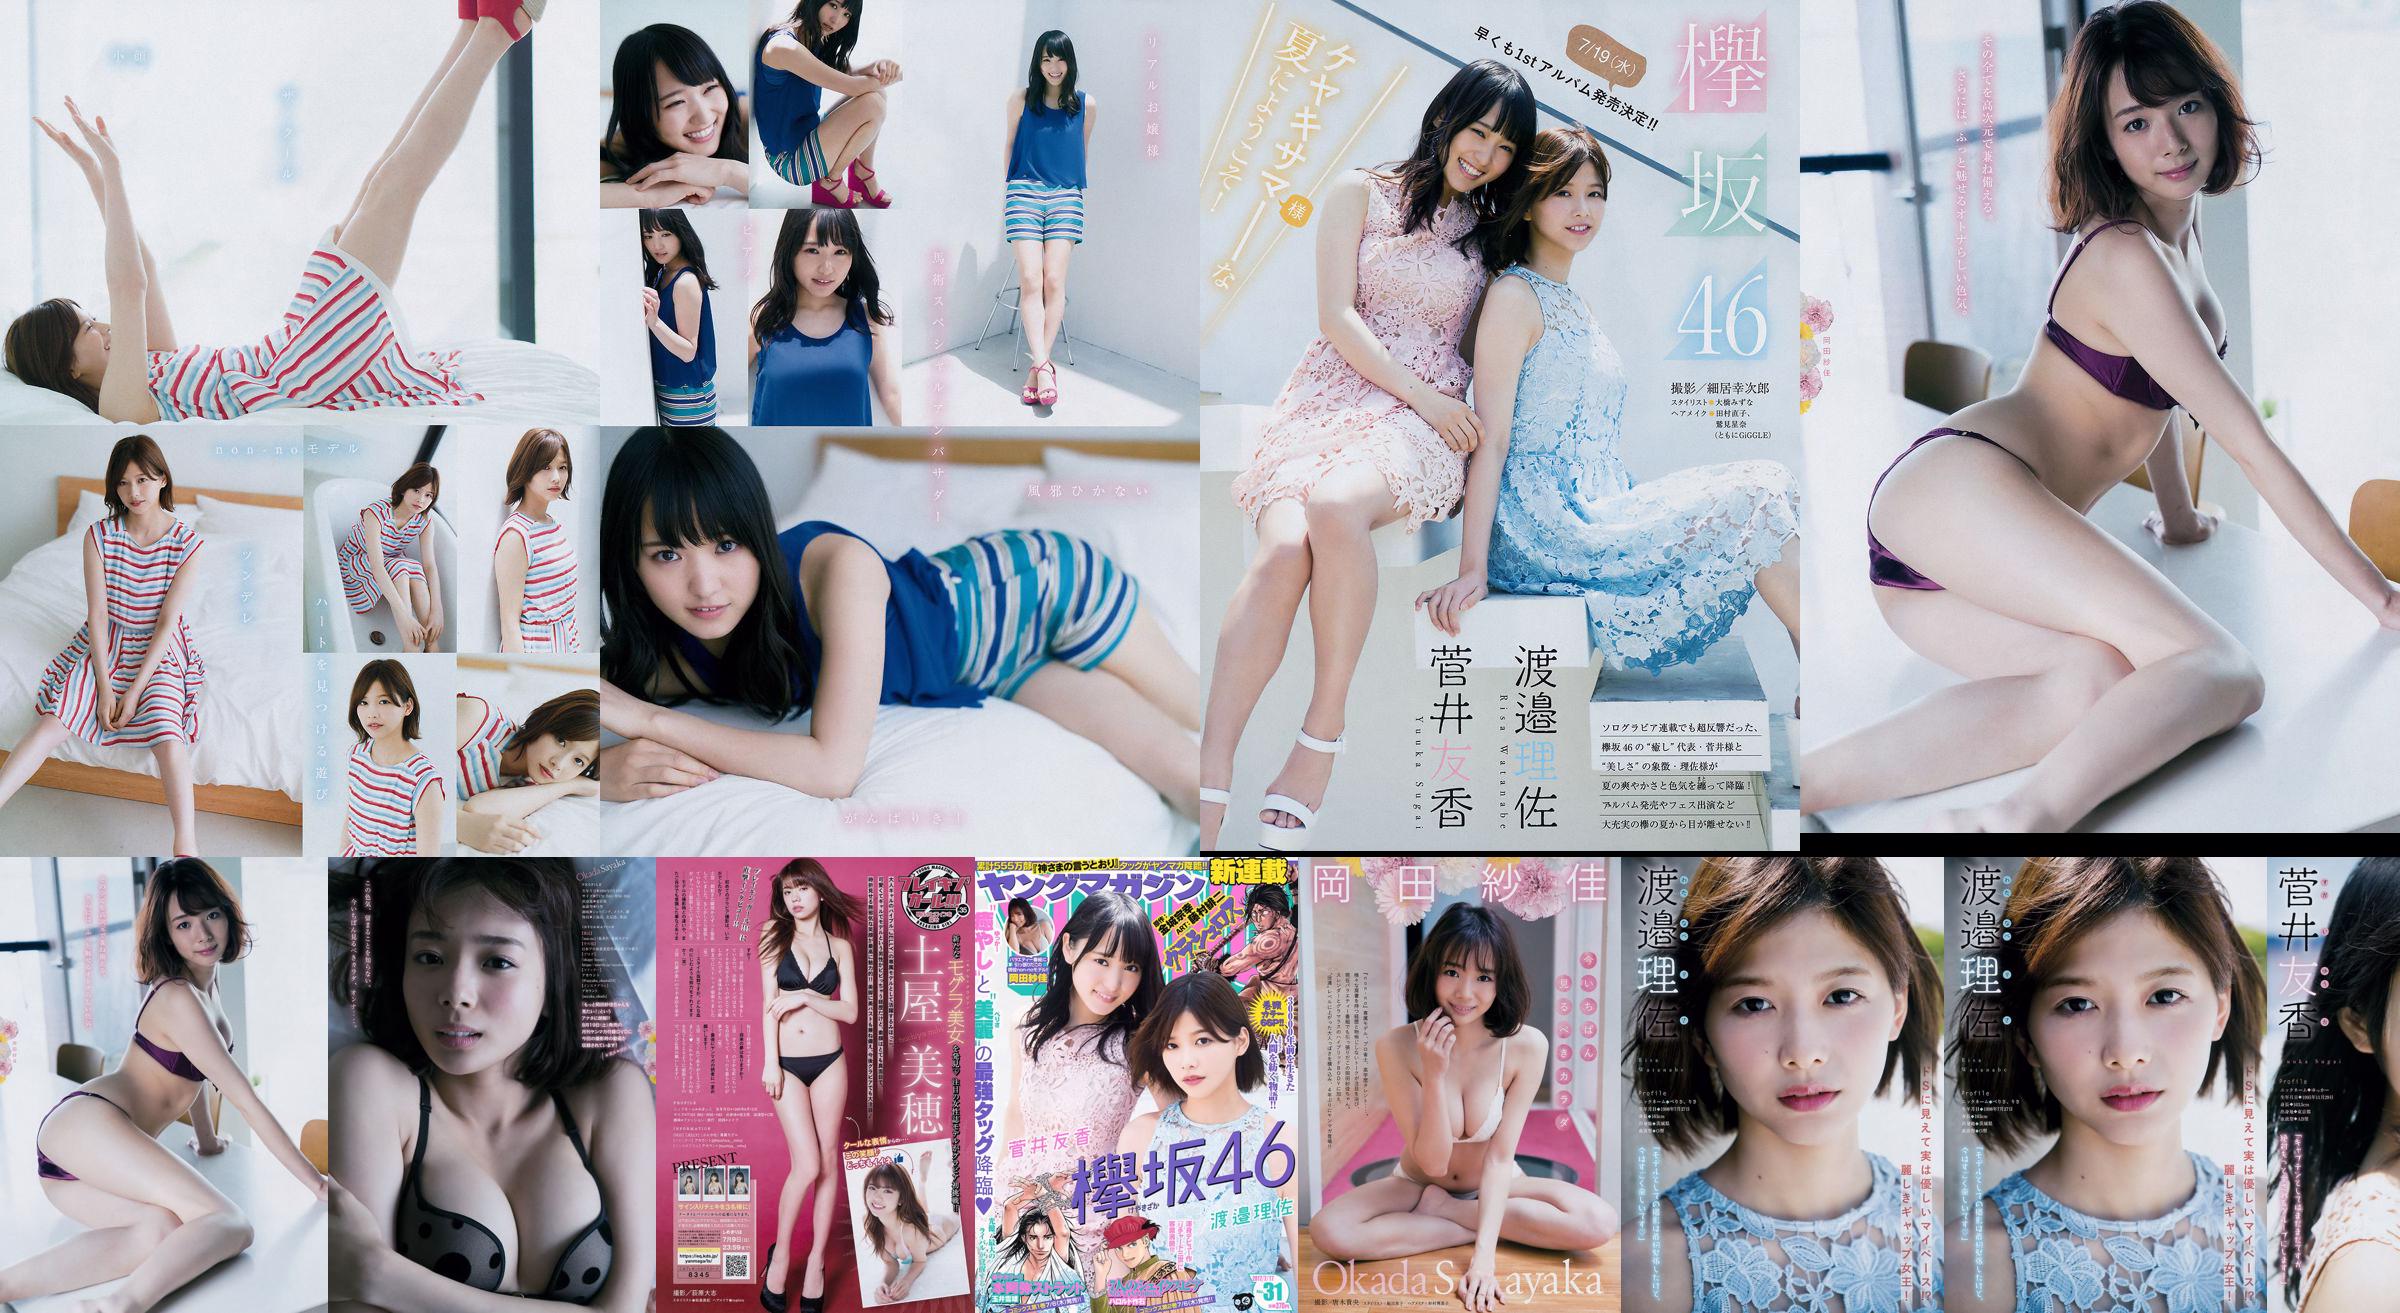 [Young Magazine] Watanabe Risa, Sugai Yuka, Okada Saika 2017 No.31 Photo Magazine No.891bd9 Pagina 5